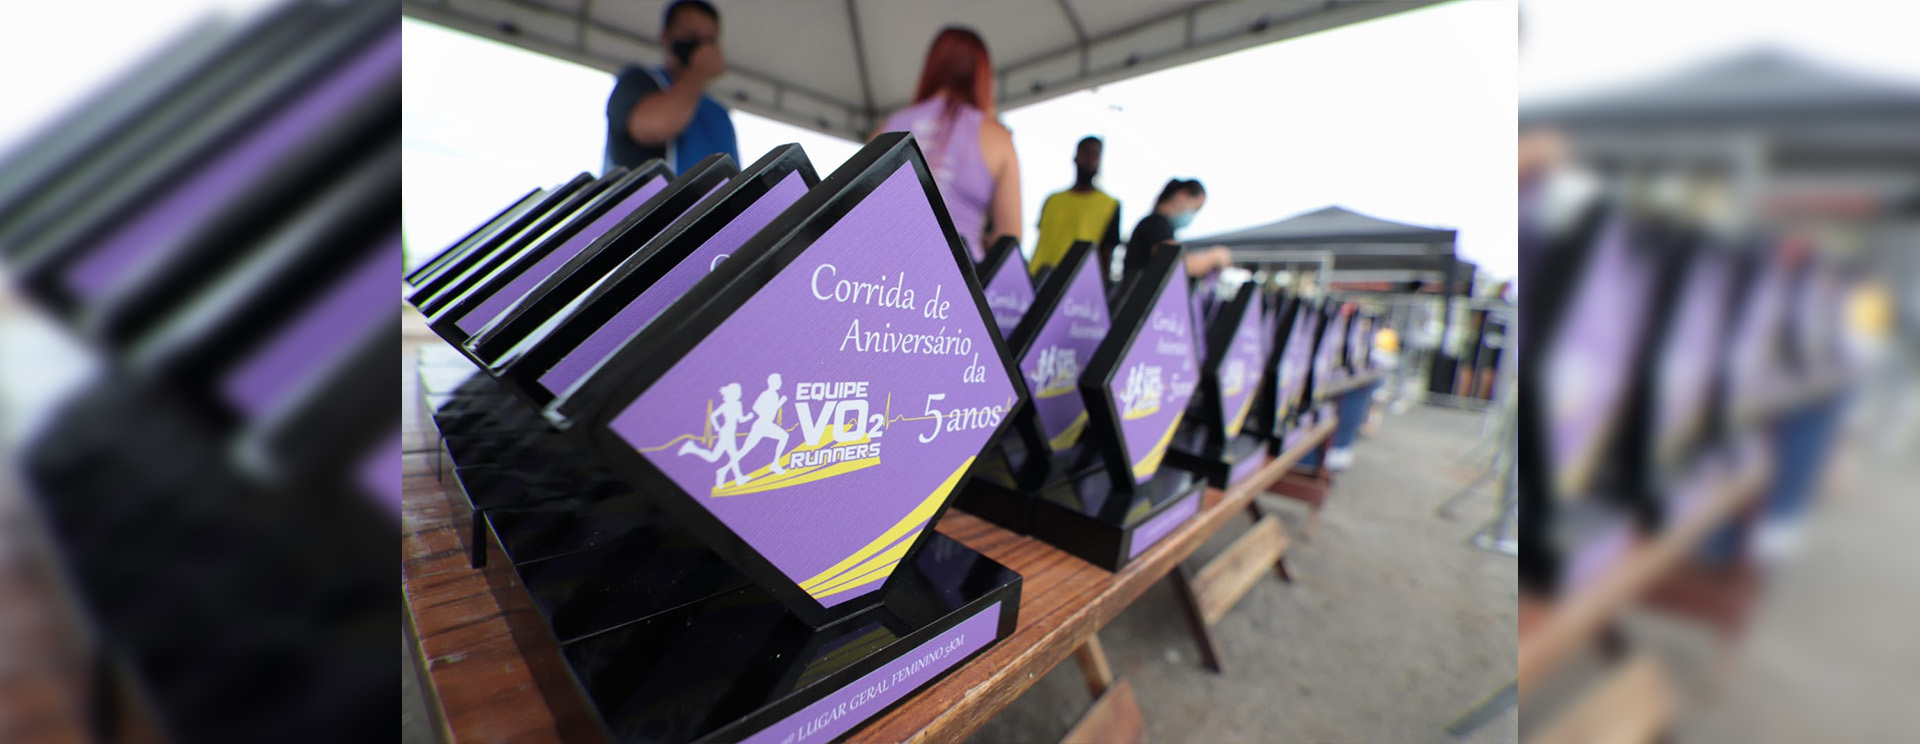 Faculdade Unilagos participa da Corrida de Aniversário da Vo2 Runners